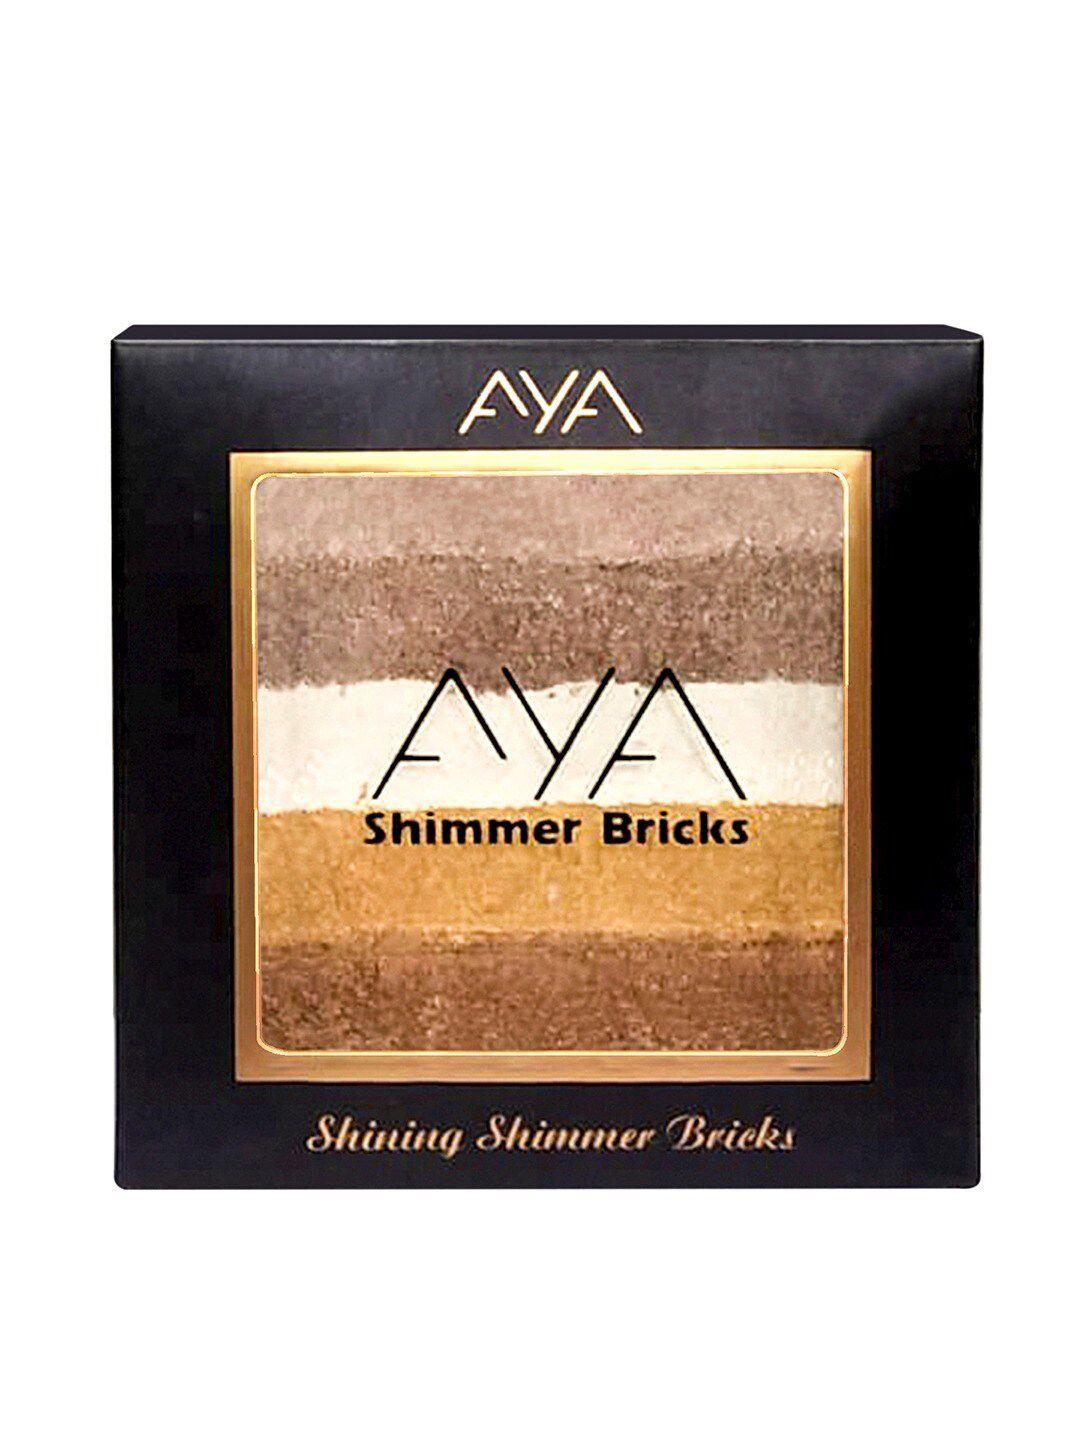 aya shinning shimmer bricks highlighter - shade 03